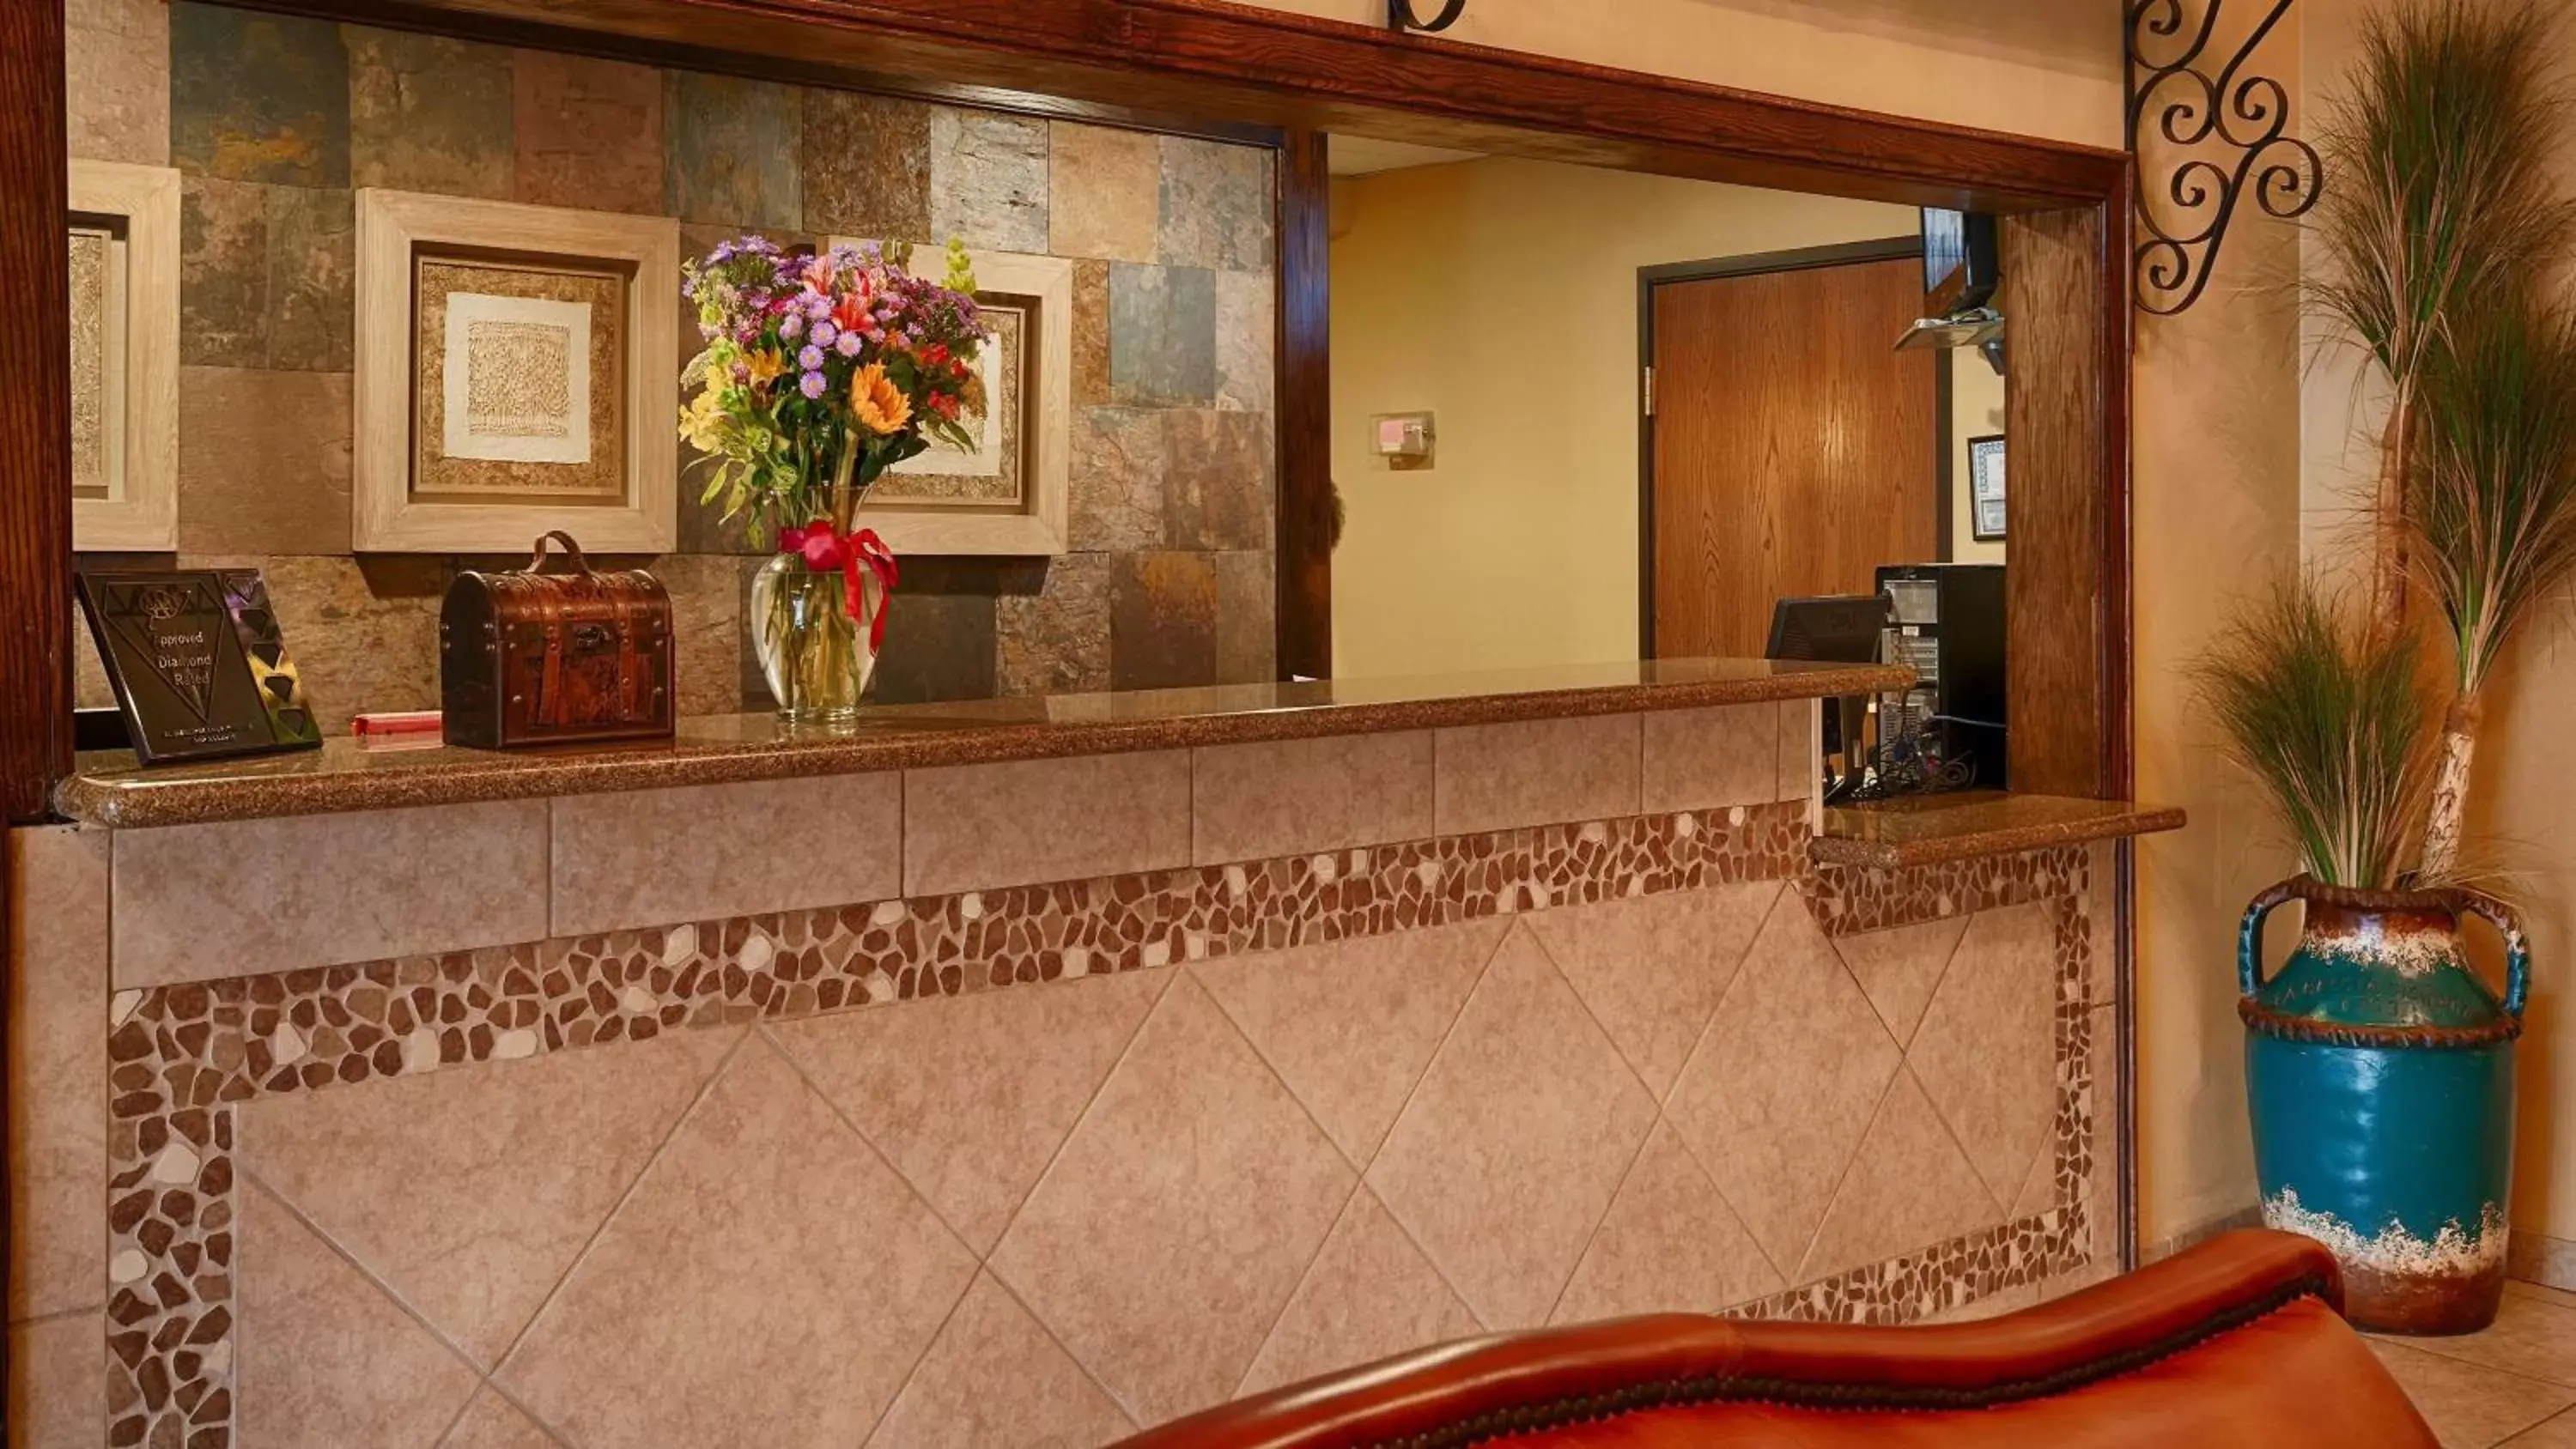 Lobby or reception, Lobby/Reception in Best Western San Isidro Inn